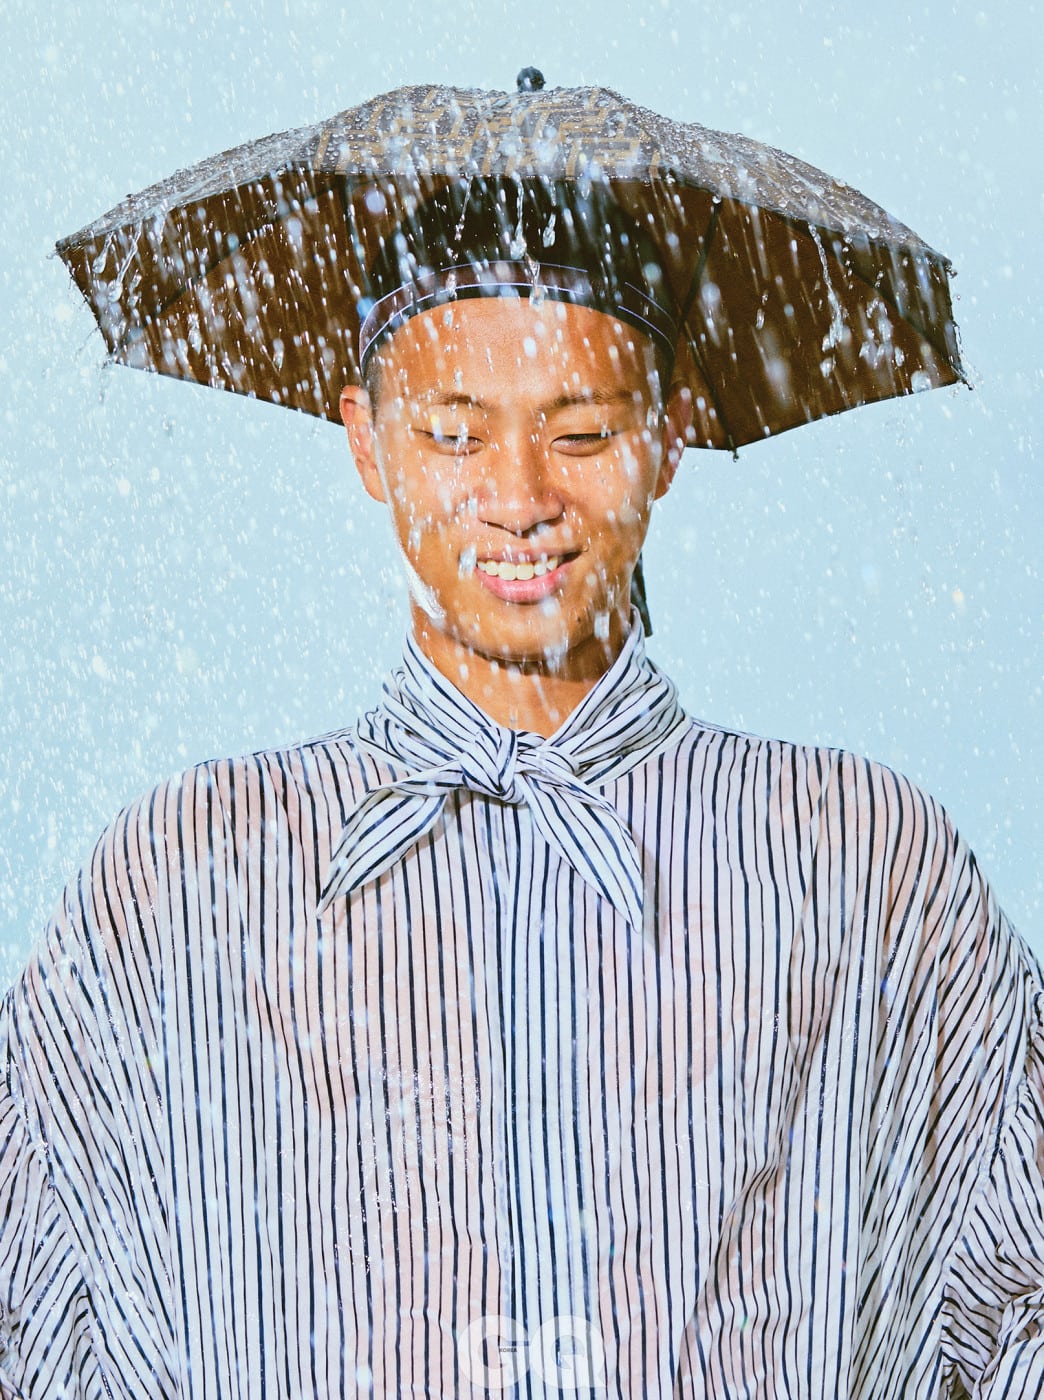 스트라이프 셔츠 가격 미정, 우영미. 우산 모자 43만원, 펜디.